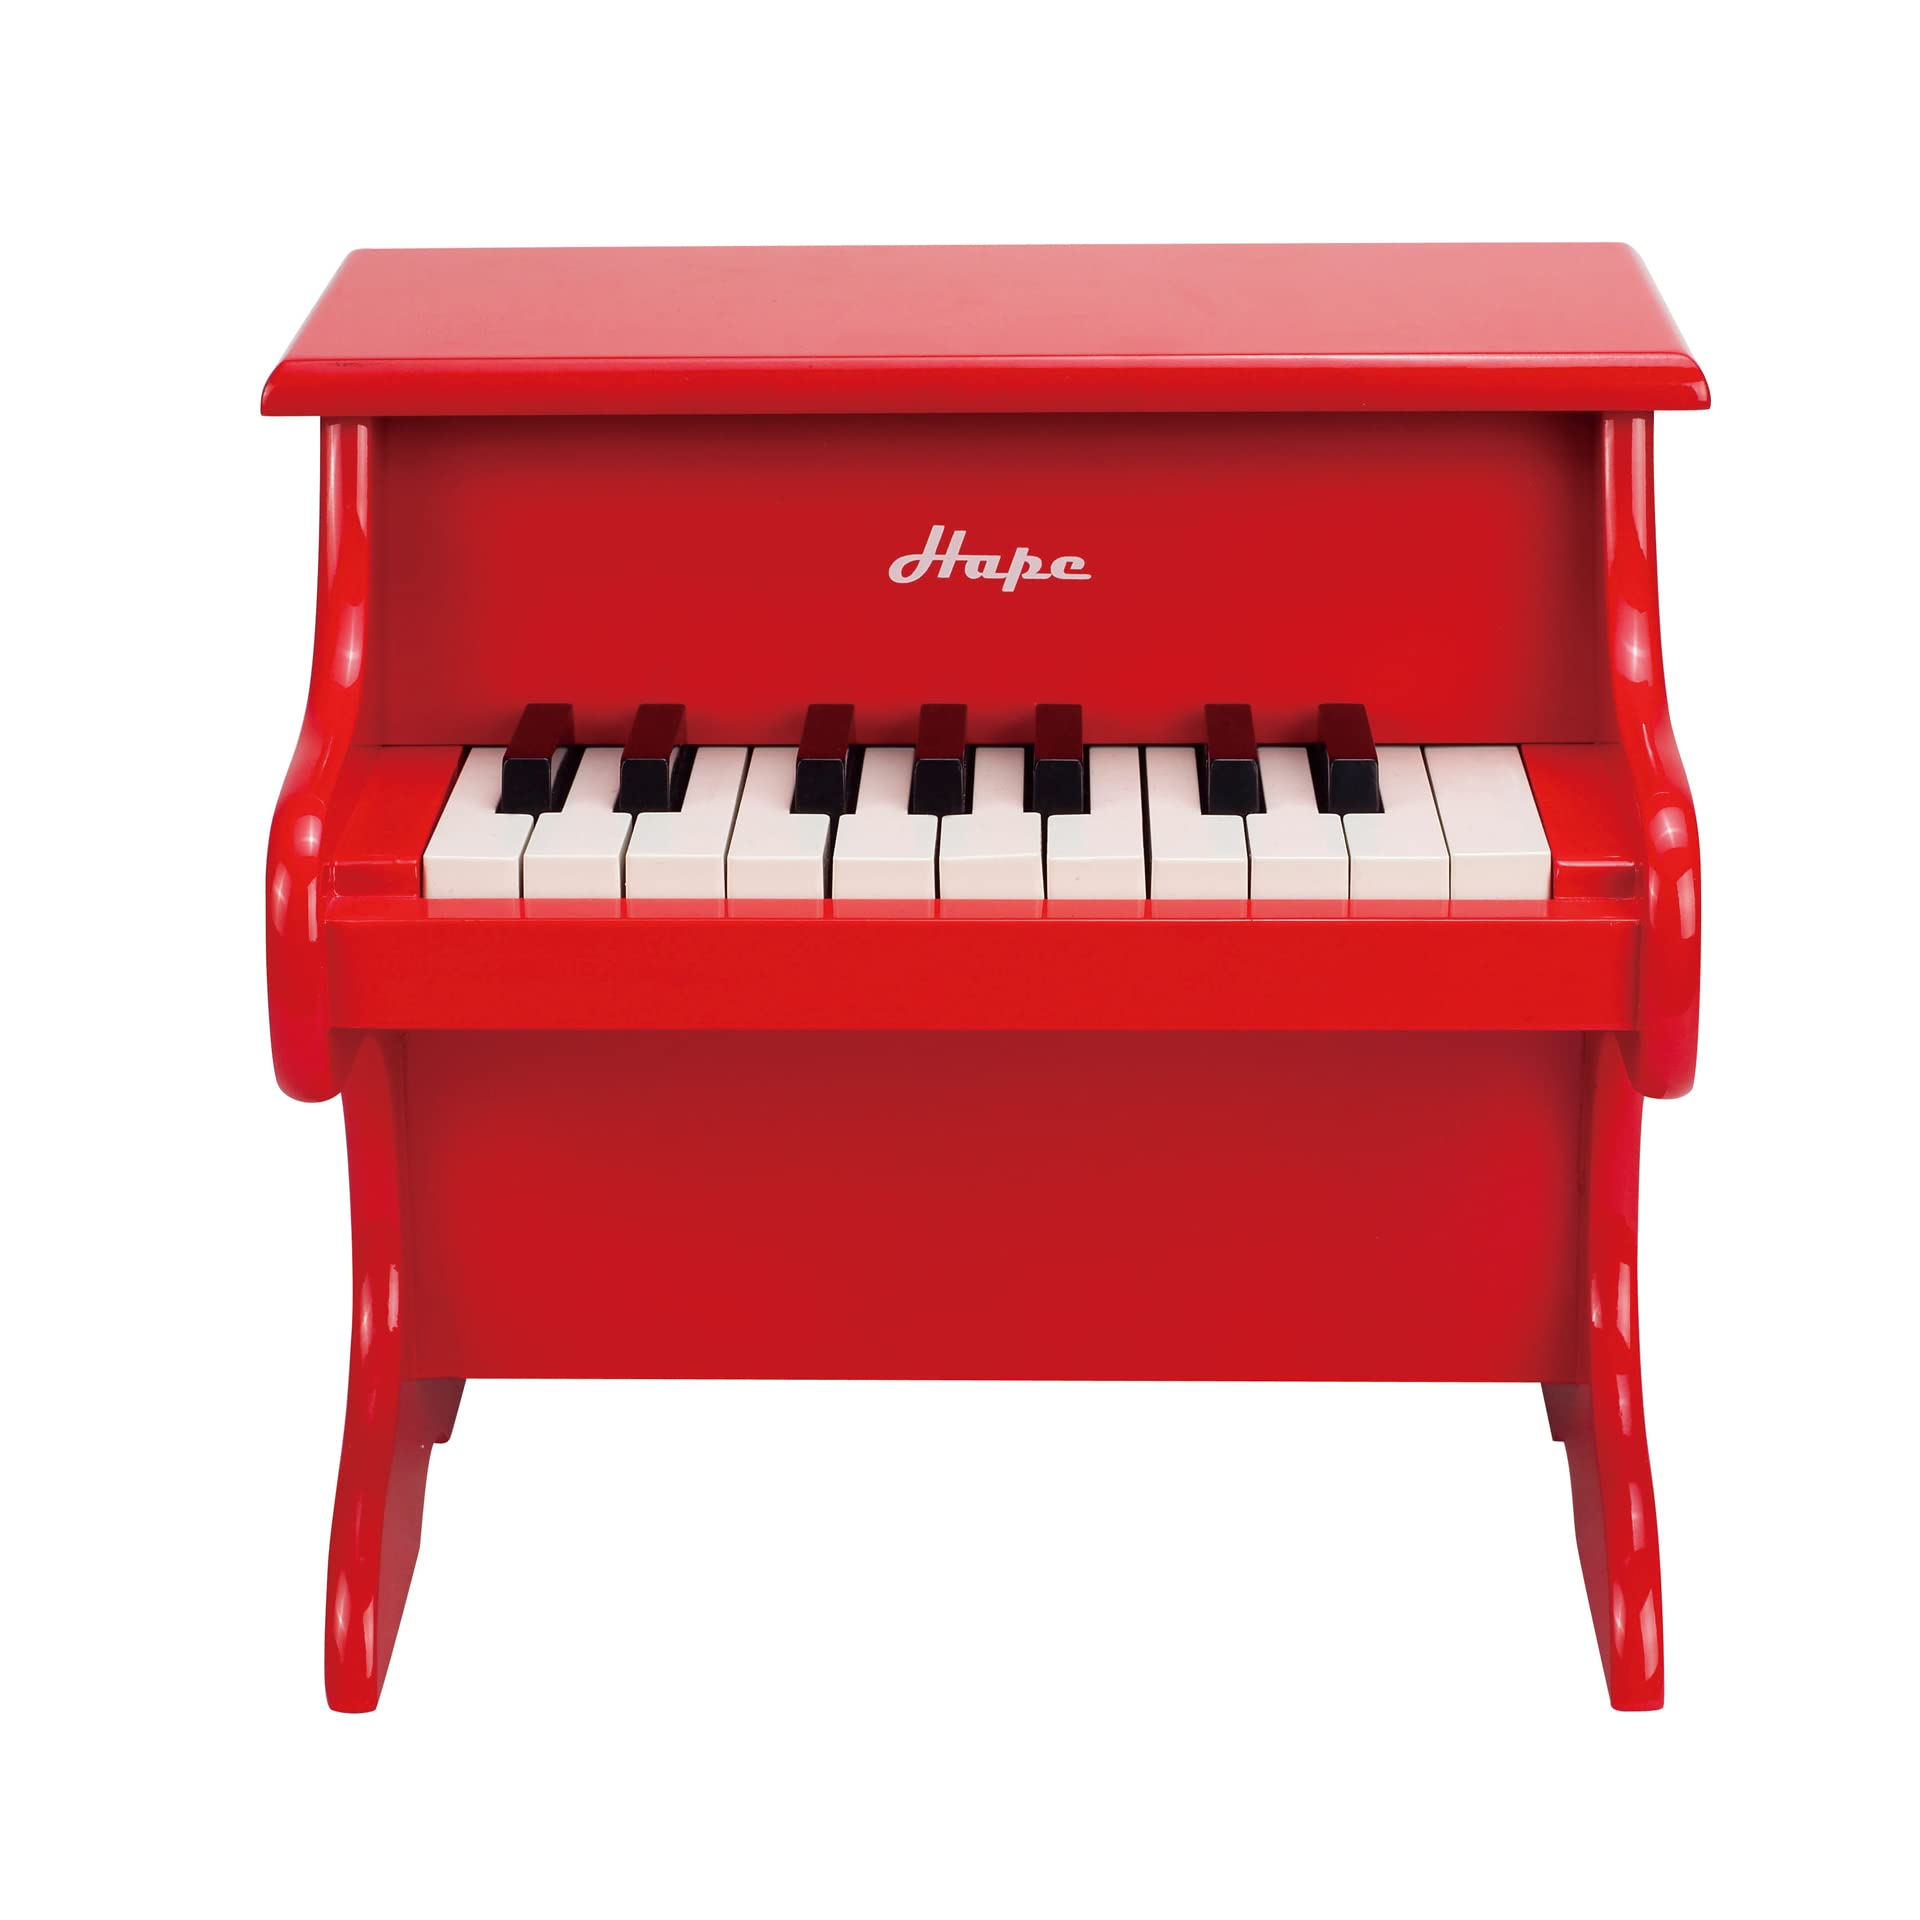 Hape Spielzeug-Klavier | Mit 18 Tasten, Musikinstrument für Kinder aus Holz, Rot